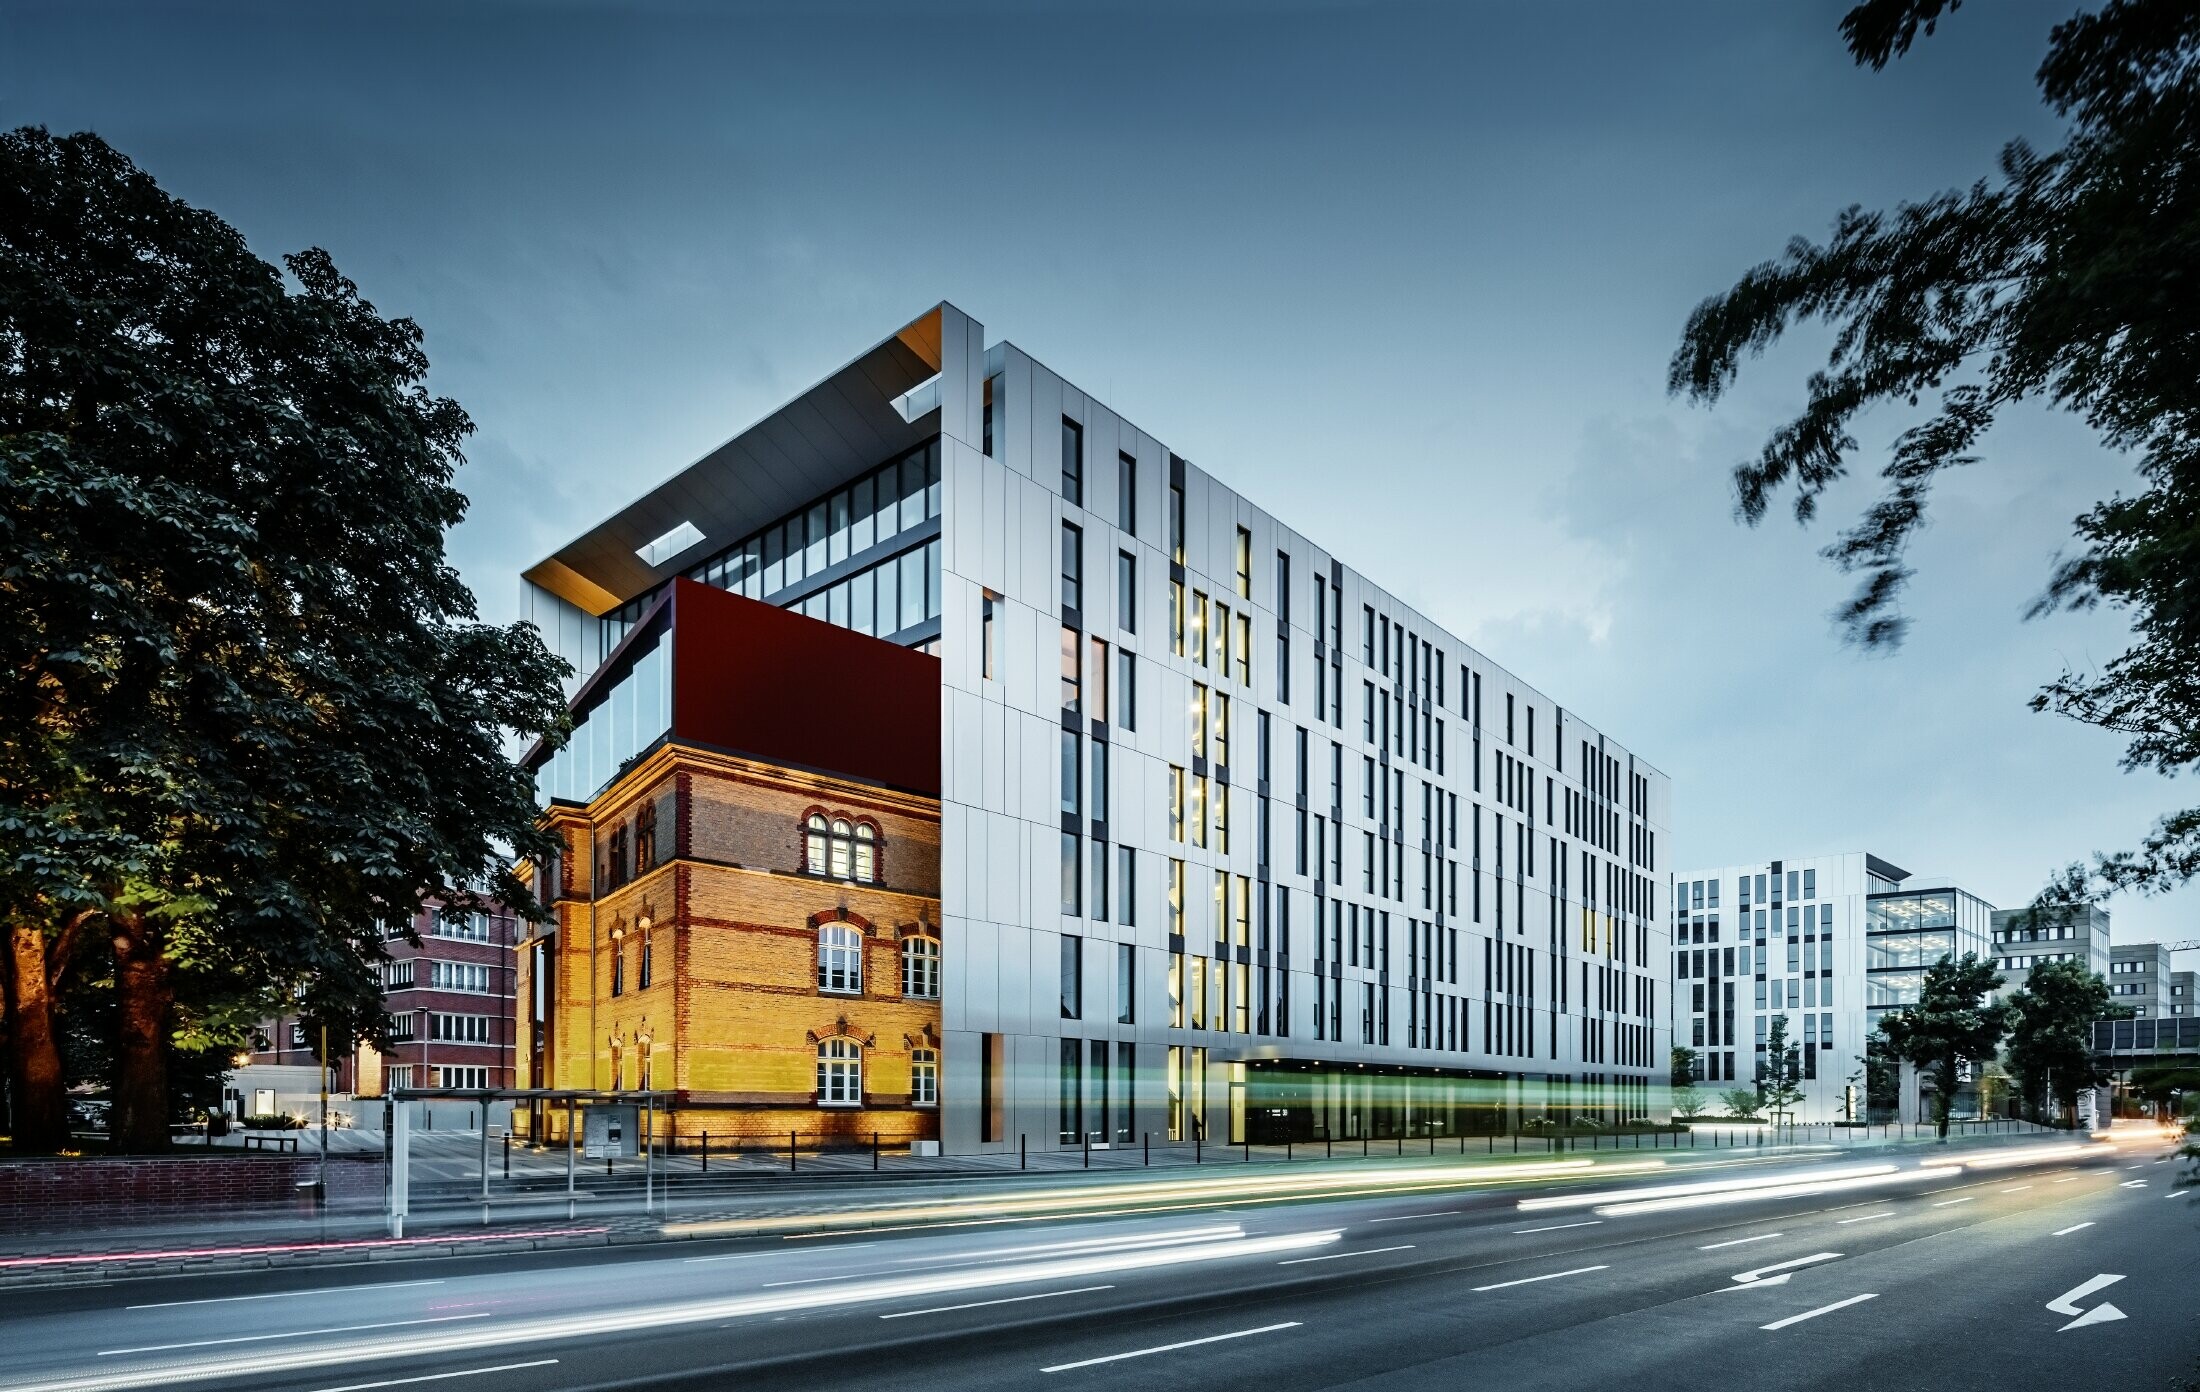 Complexe architectural Clara et Robert au centre de Düsseldorf — Façades en aluminium futuristes réalisées avec des panneaux composites PREFA en aluminium brossé.